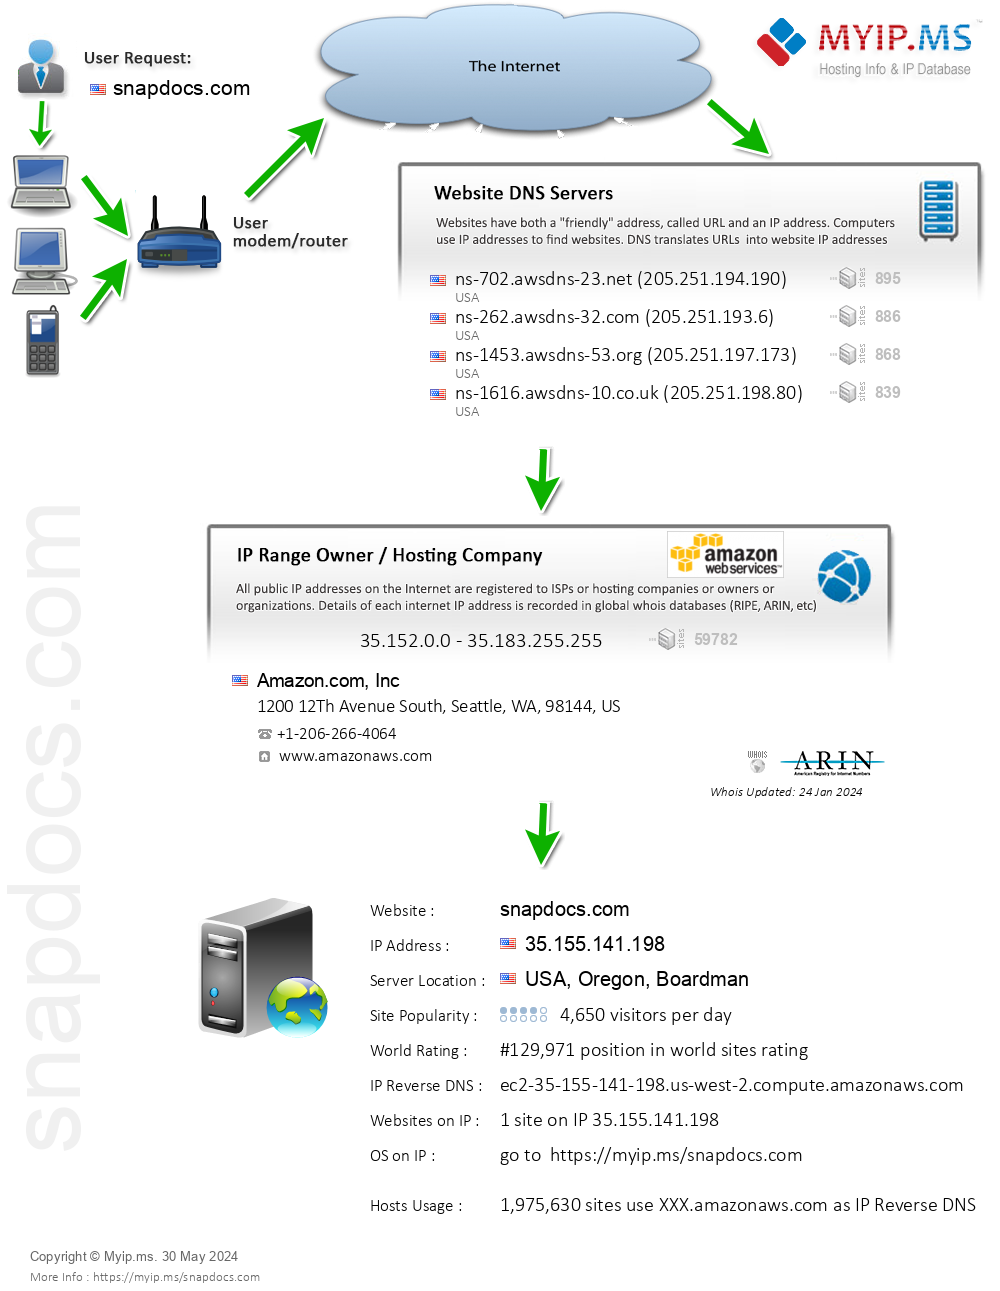 Snapdocs.com - Website Hosting Visual IP Diagram